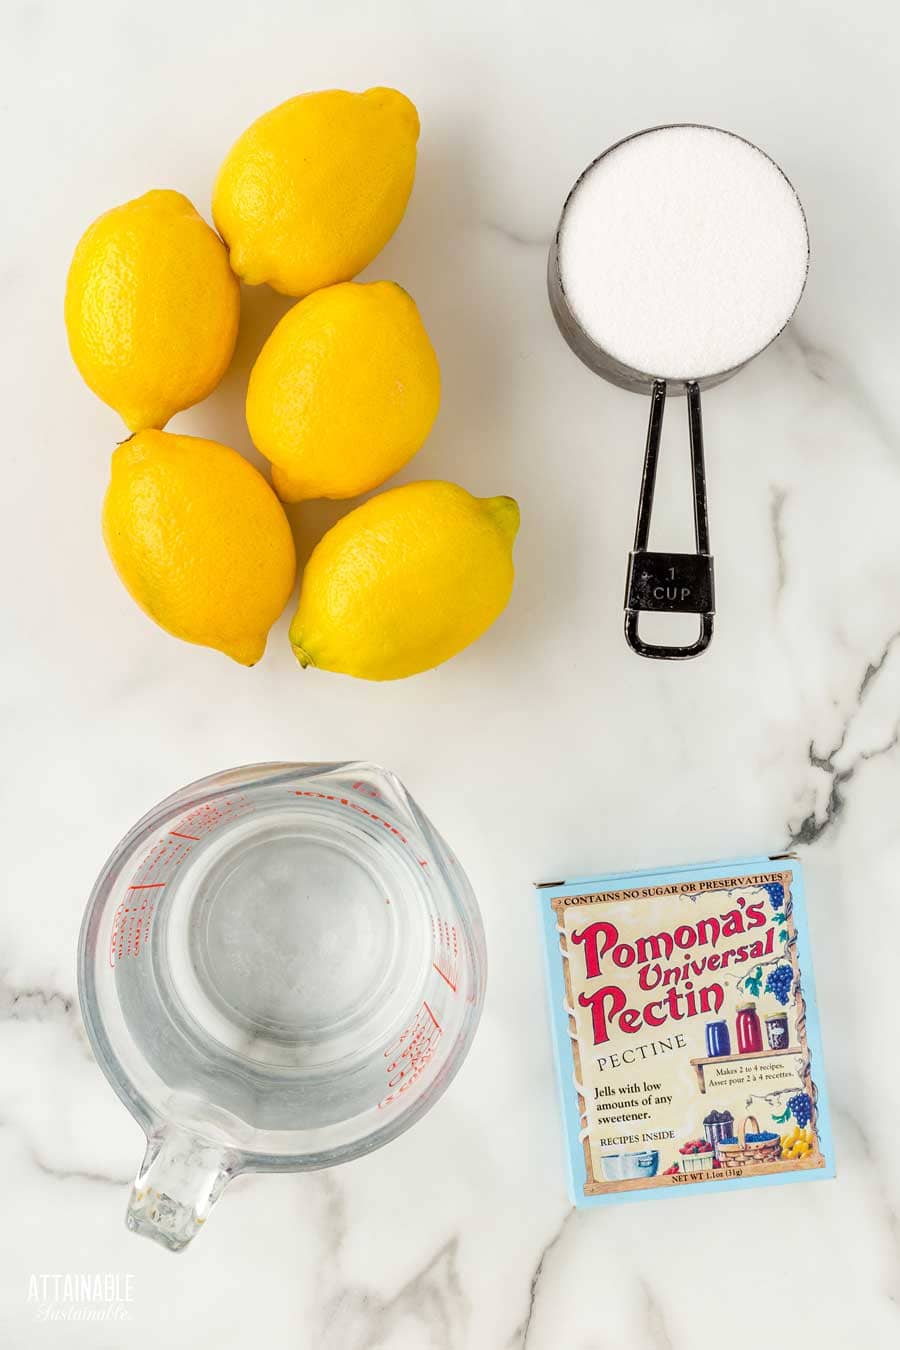 ingredients for lemon marmalade: lemons, sugar, pectin, water.